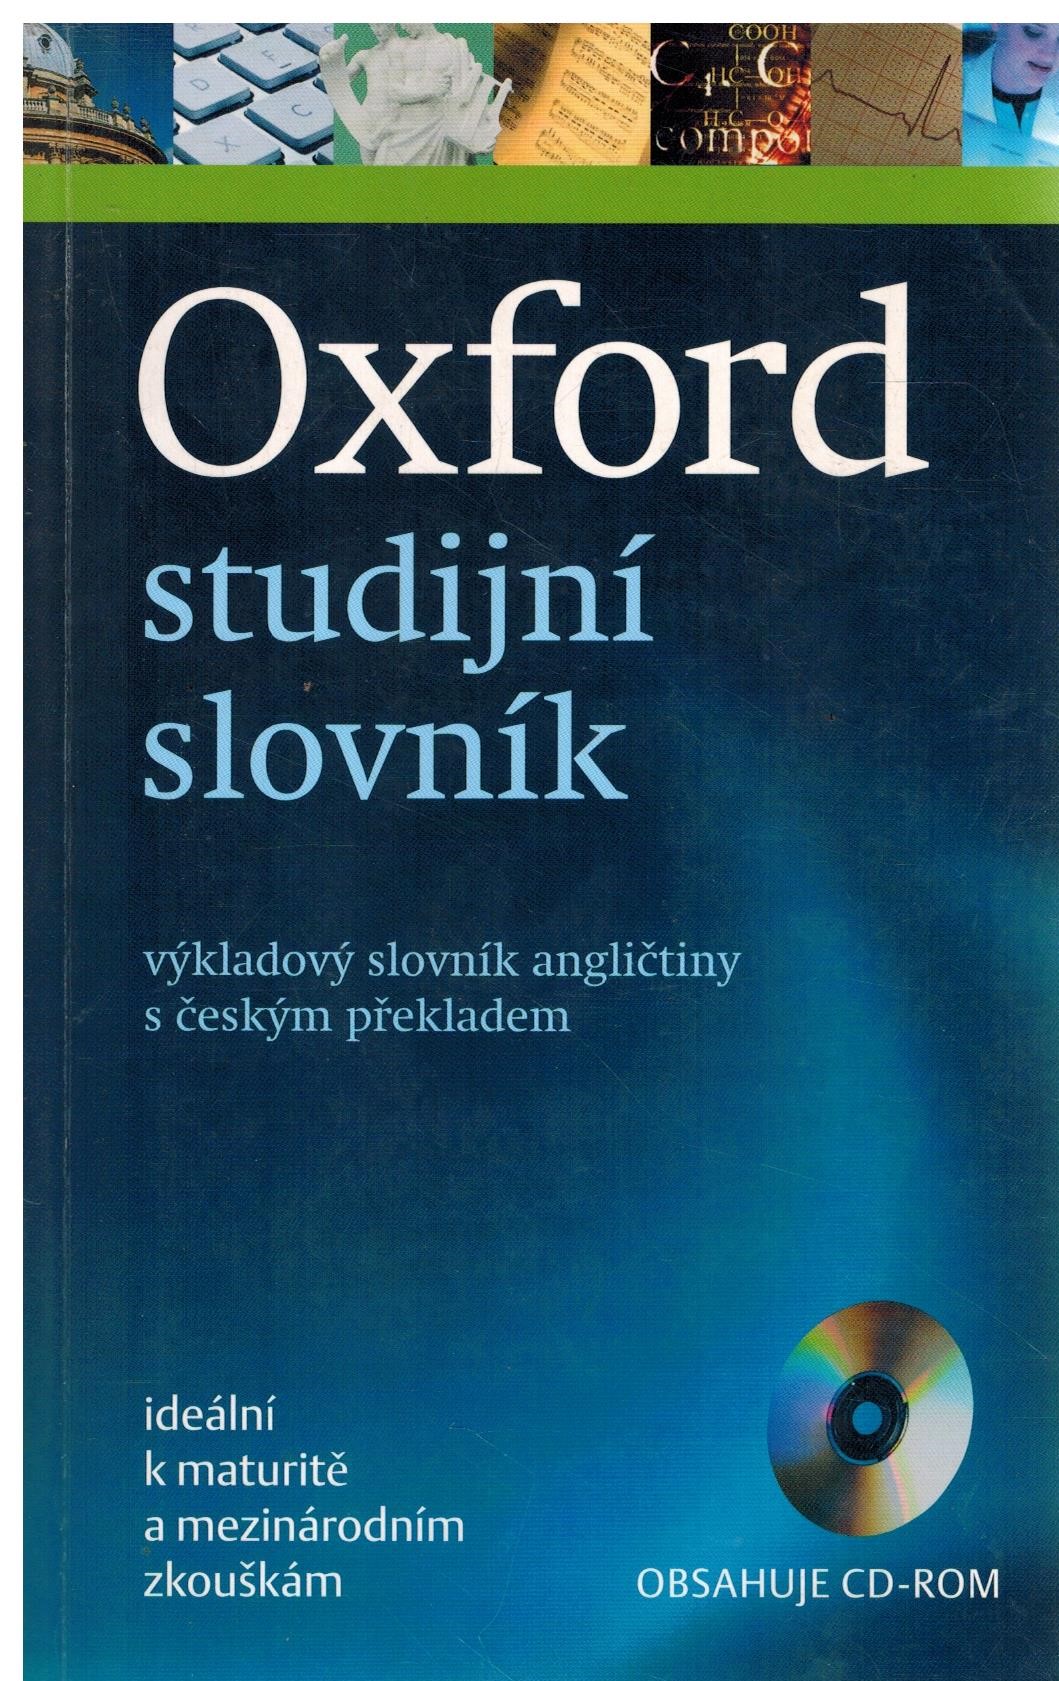 OXFORD STUDIJNÍ SLOVNÍK